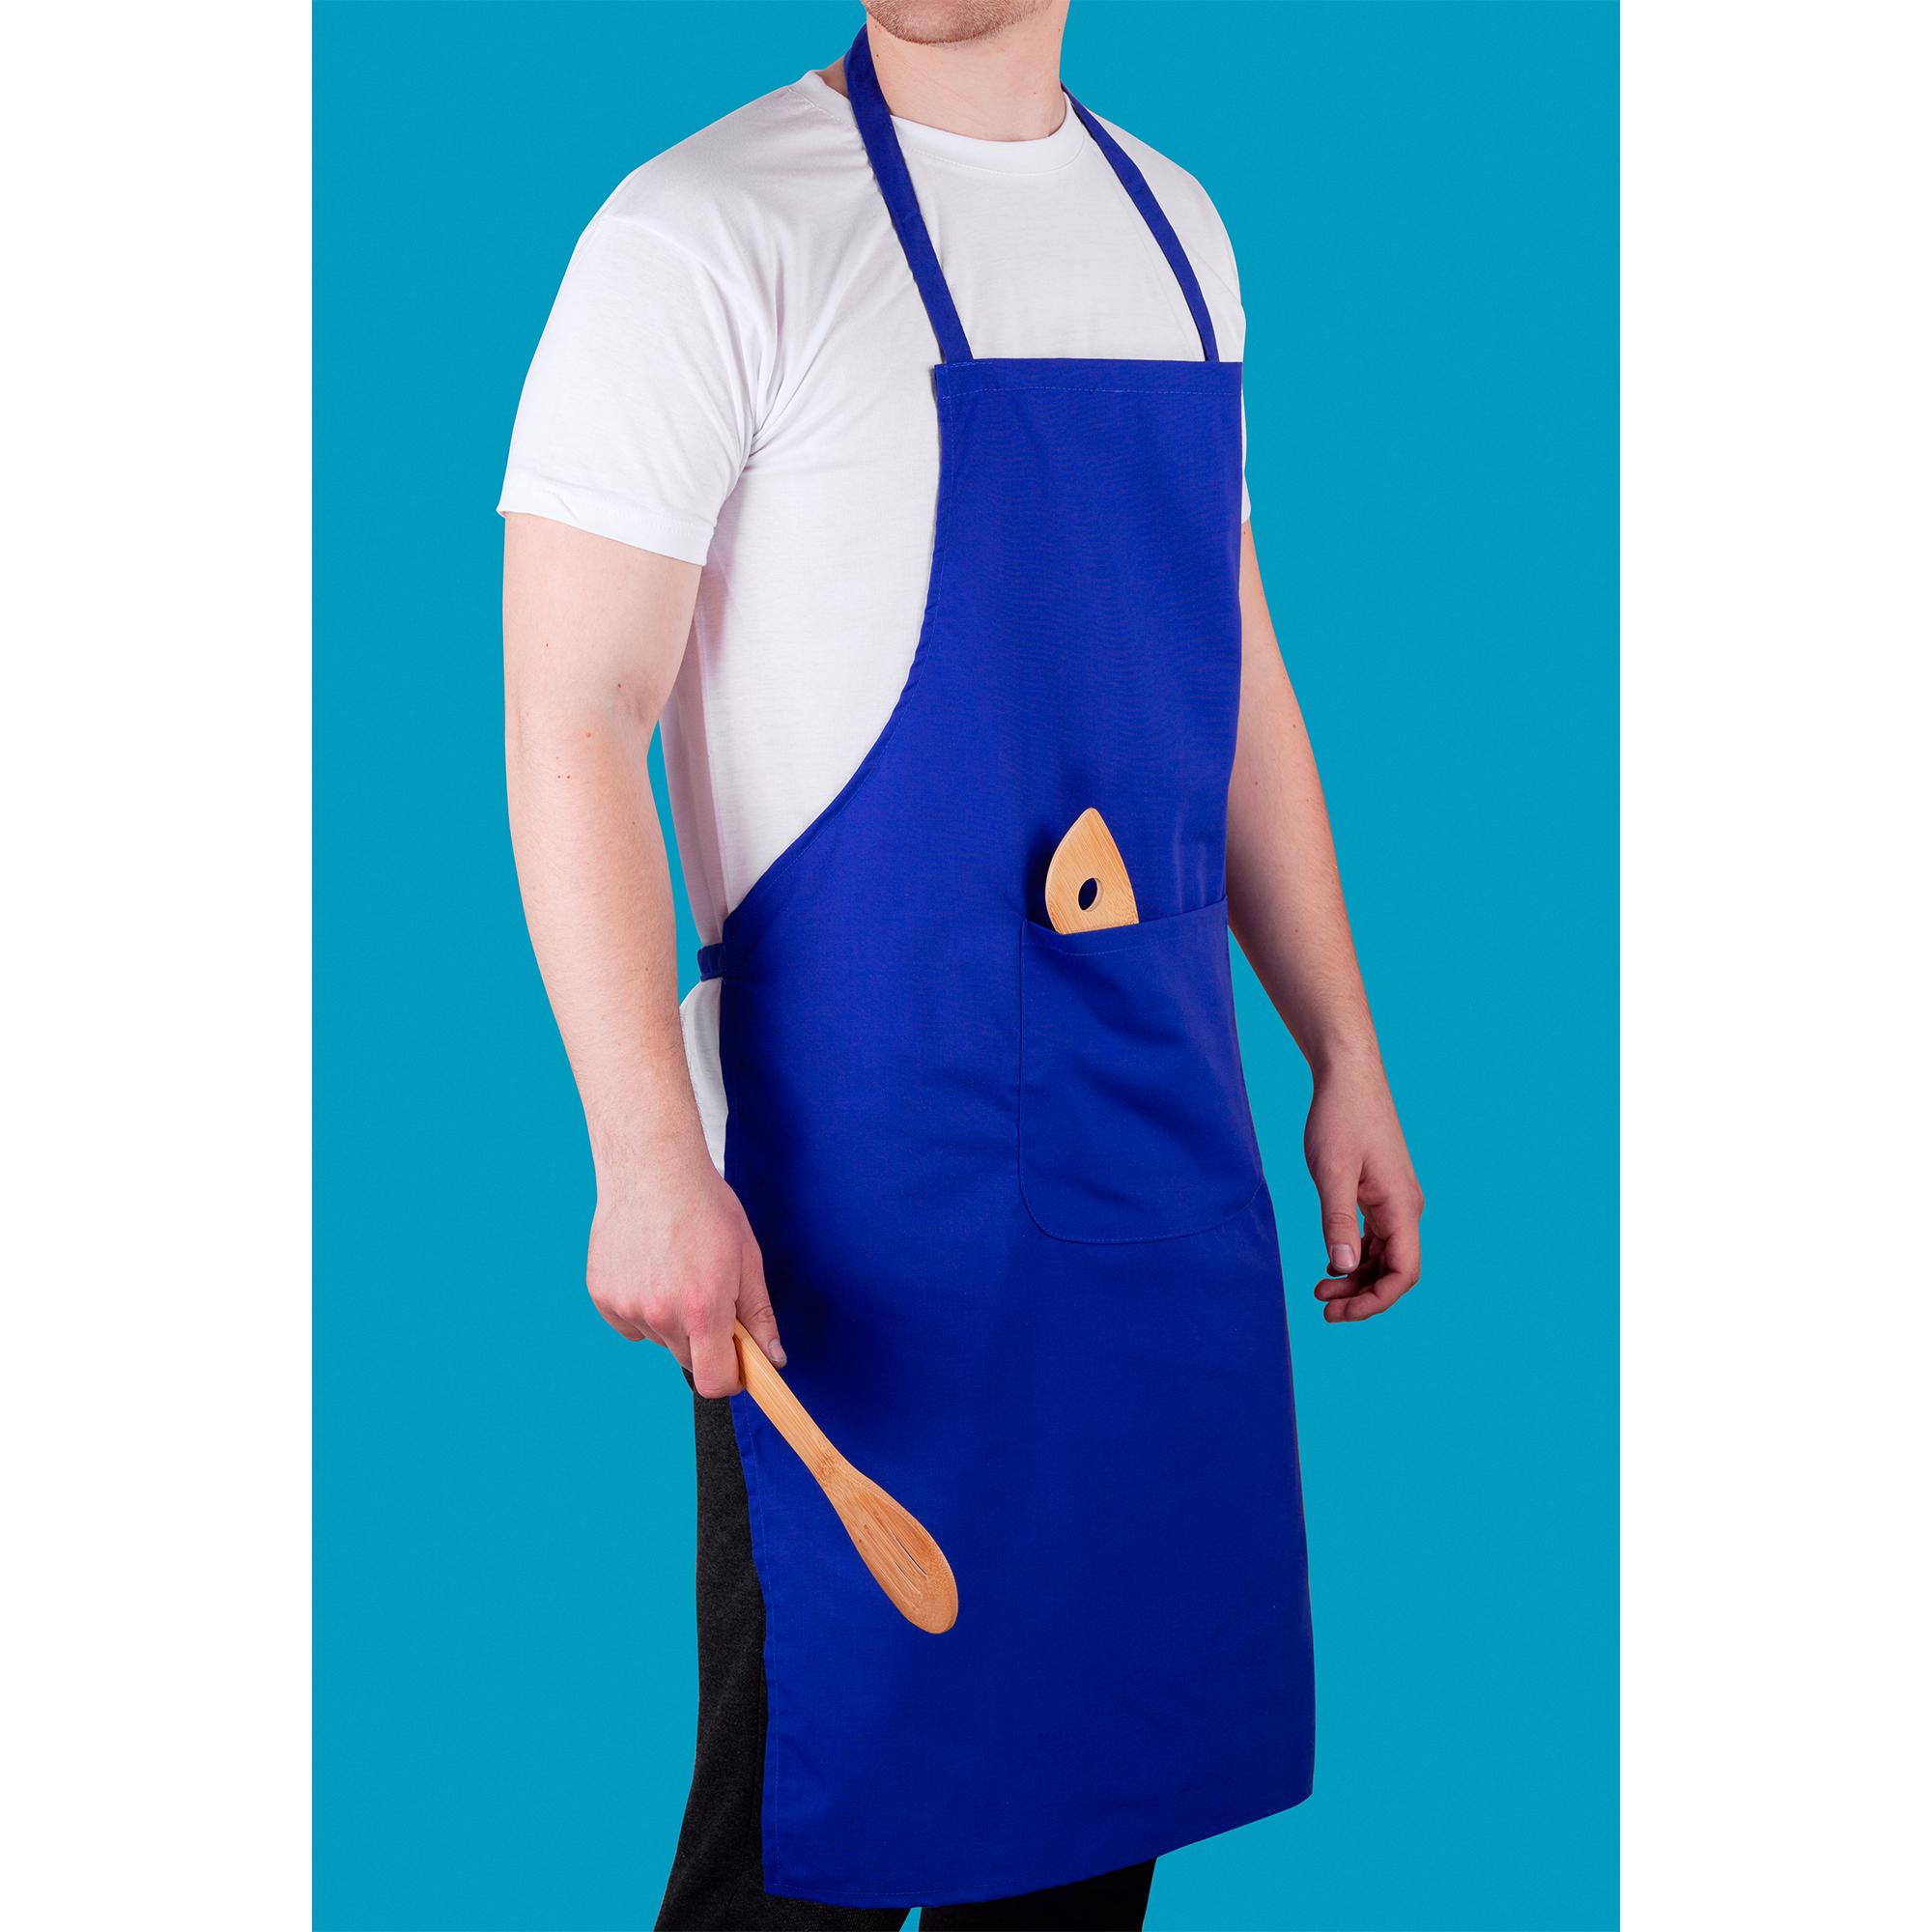 Фартук "Chef", цвет синий, фото 1